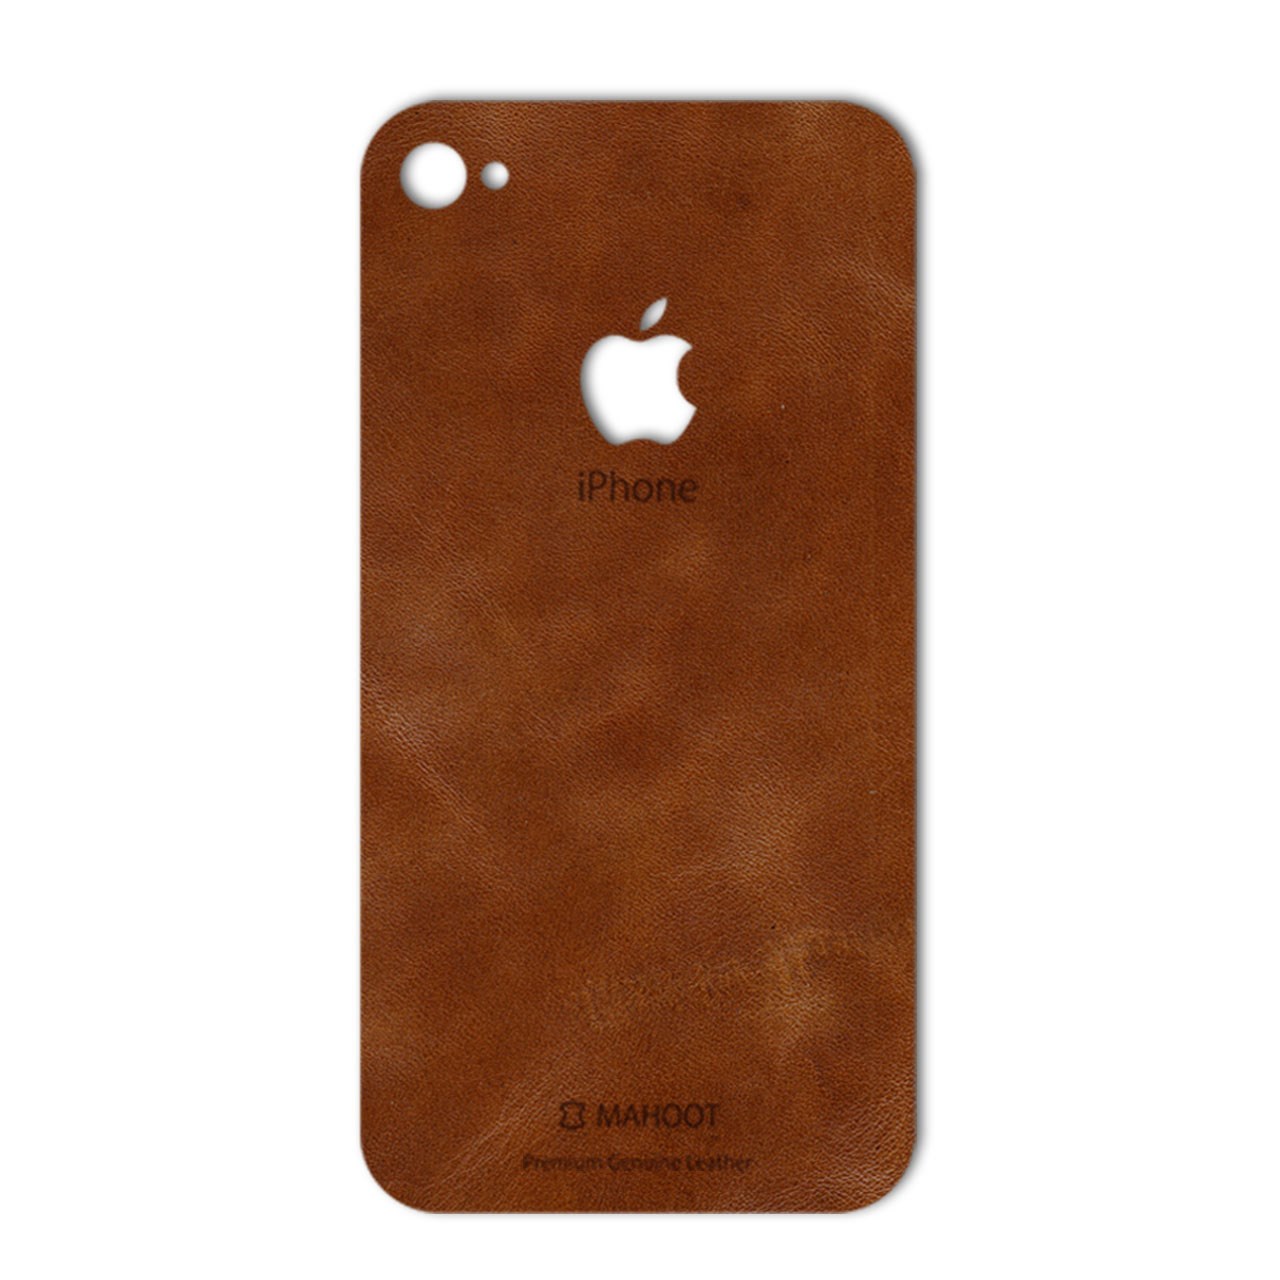 برچسب تزئینی ماهوت مدل Buffalo Leather مناسب برای گوشی iPhone 4s